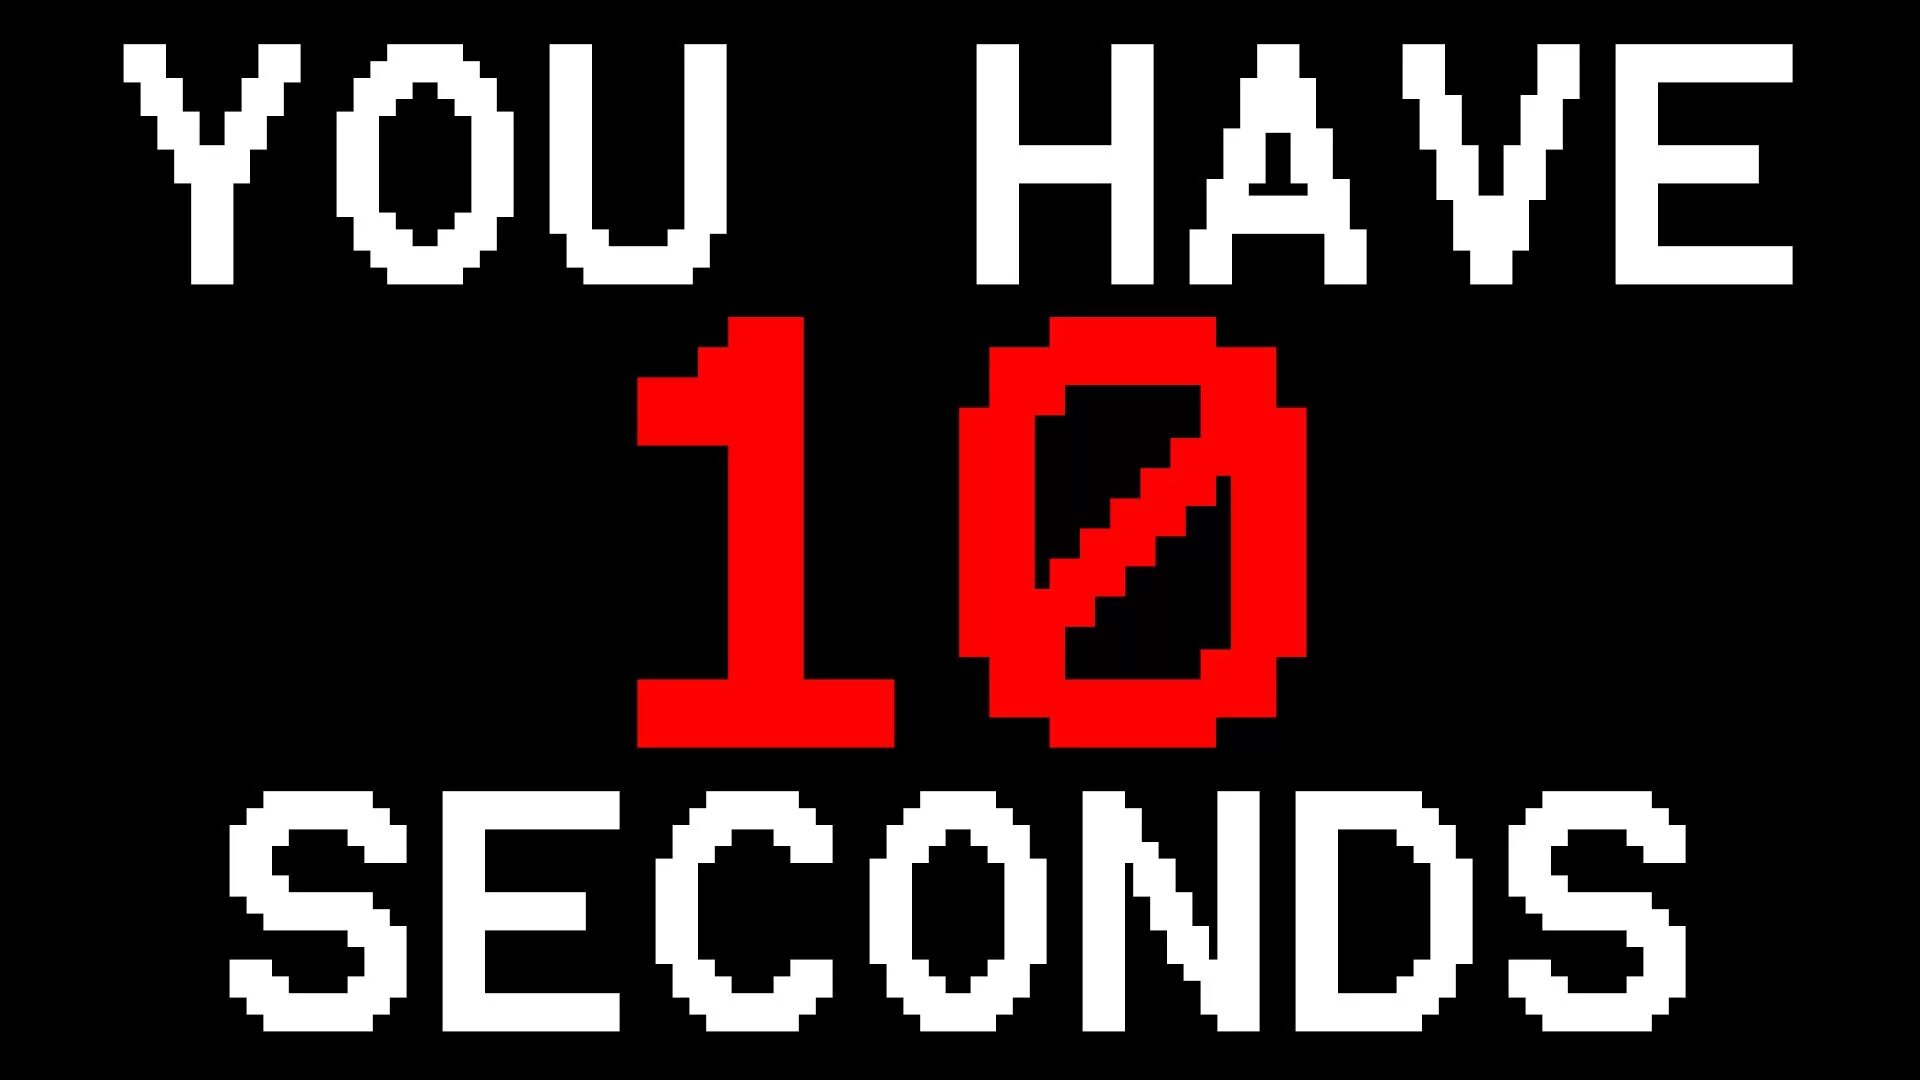 Убери 10 секунд. 10 Секунд. You have 10 seconds. Игра 10 секунд. 10^-10 Секунд.